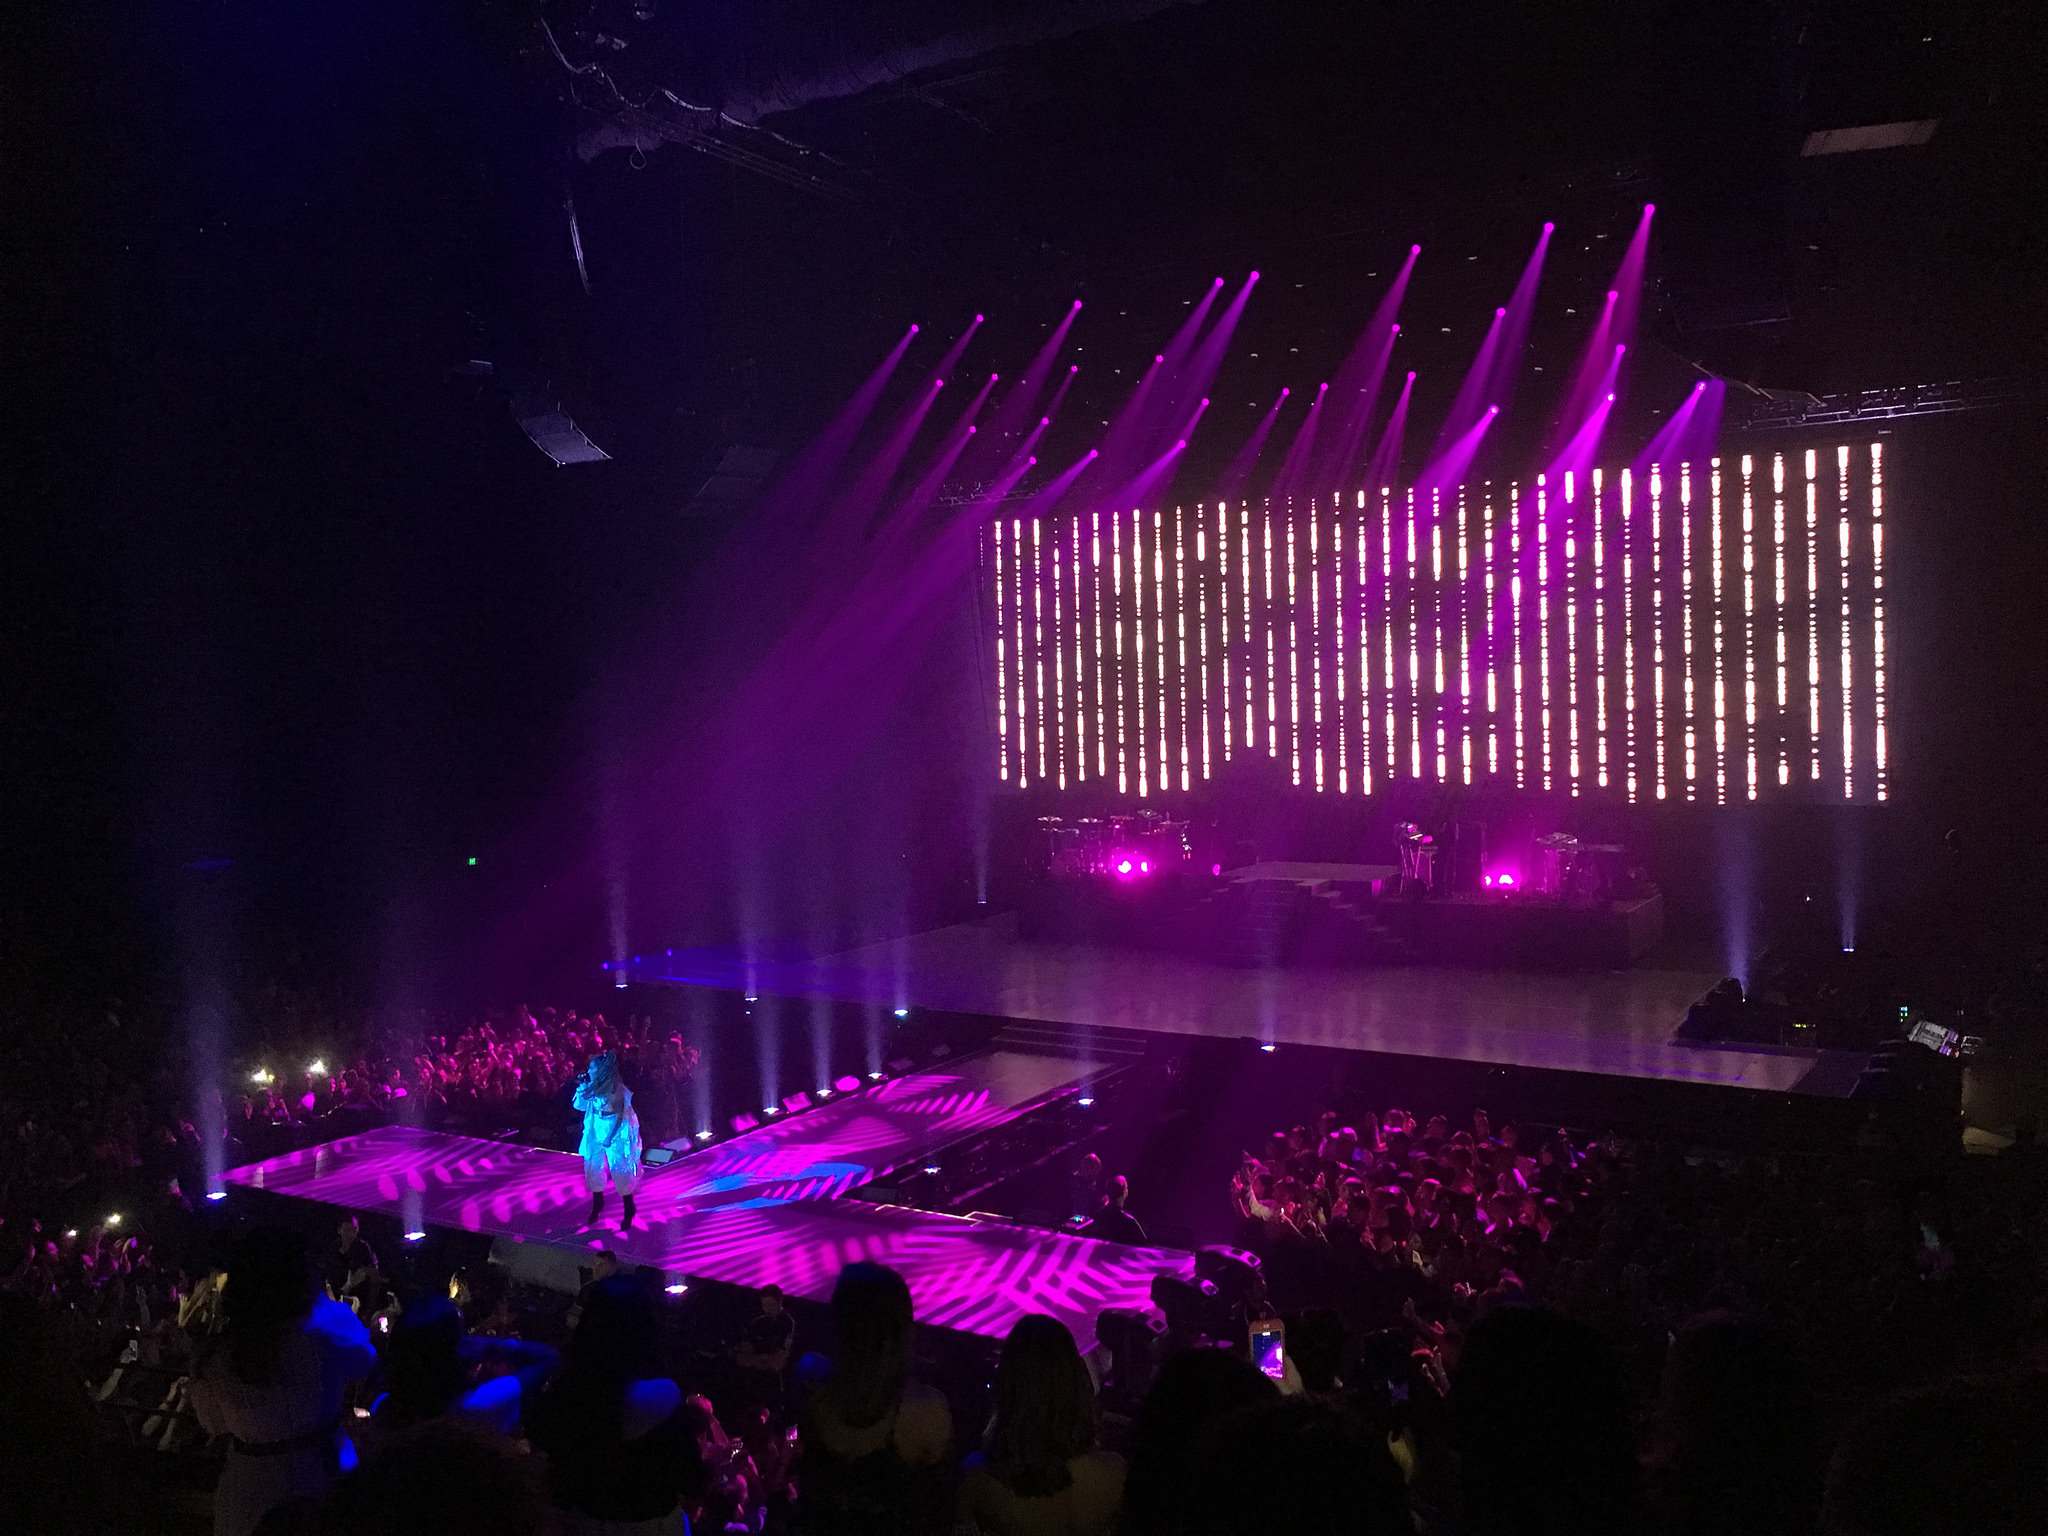 ariana grande6 Ariana Grande   Dangerous Woman Tour in Sydney, Australia